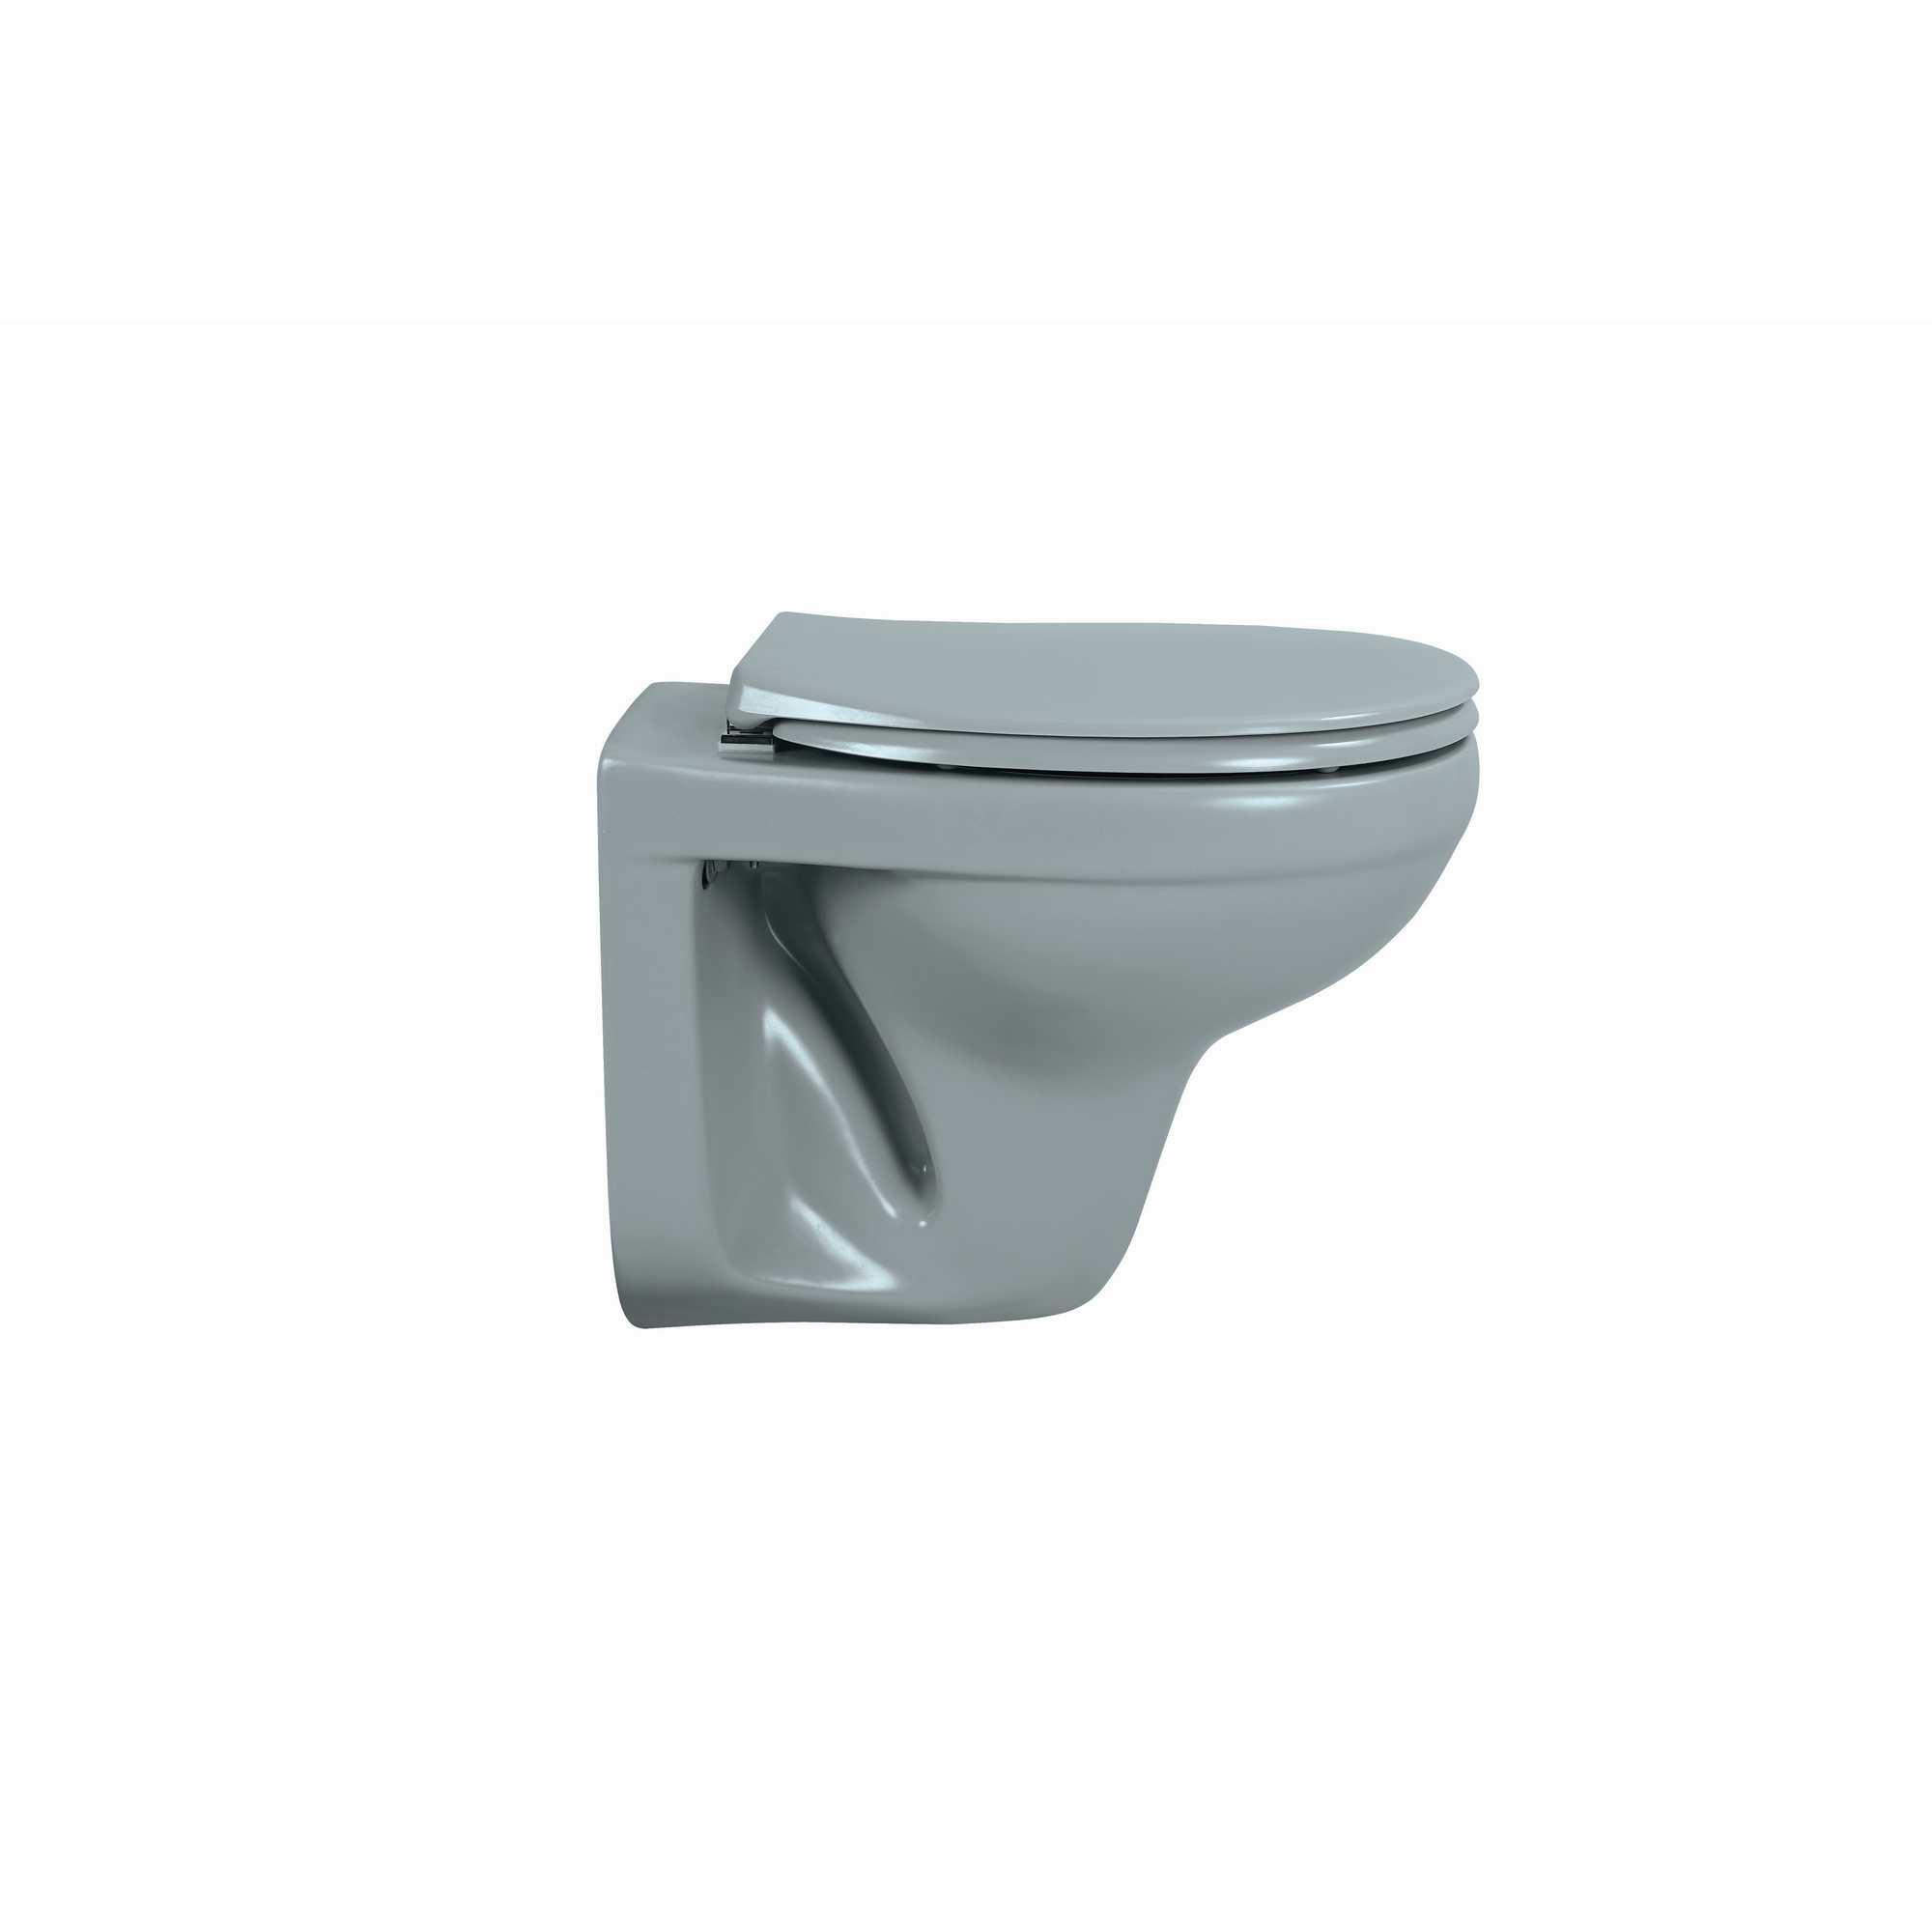 Wand-WC Tiefspüler spülrandlos matt grau, ohne WC-Sitz + product picture